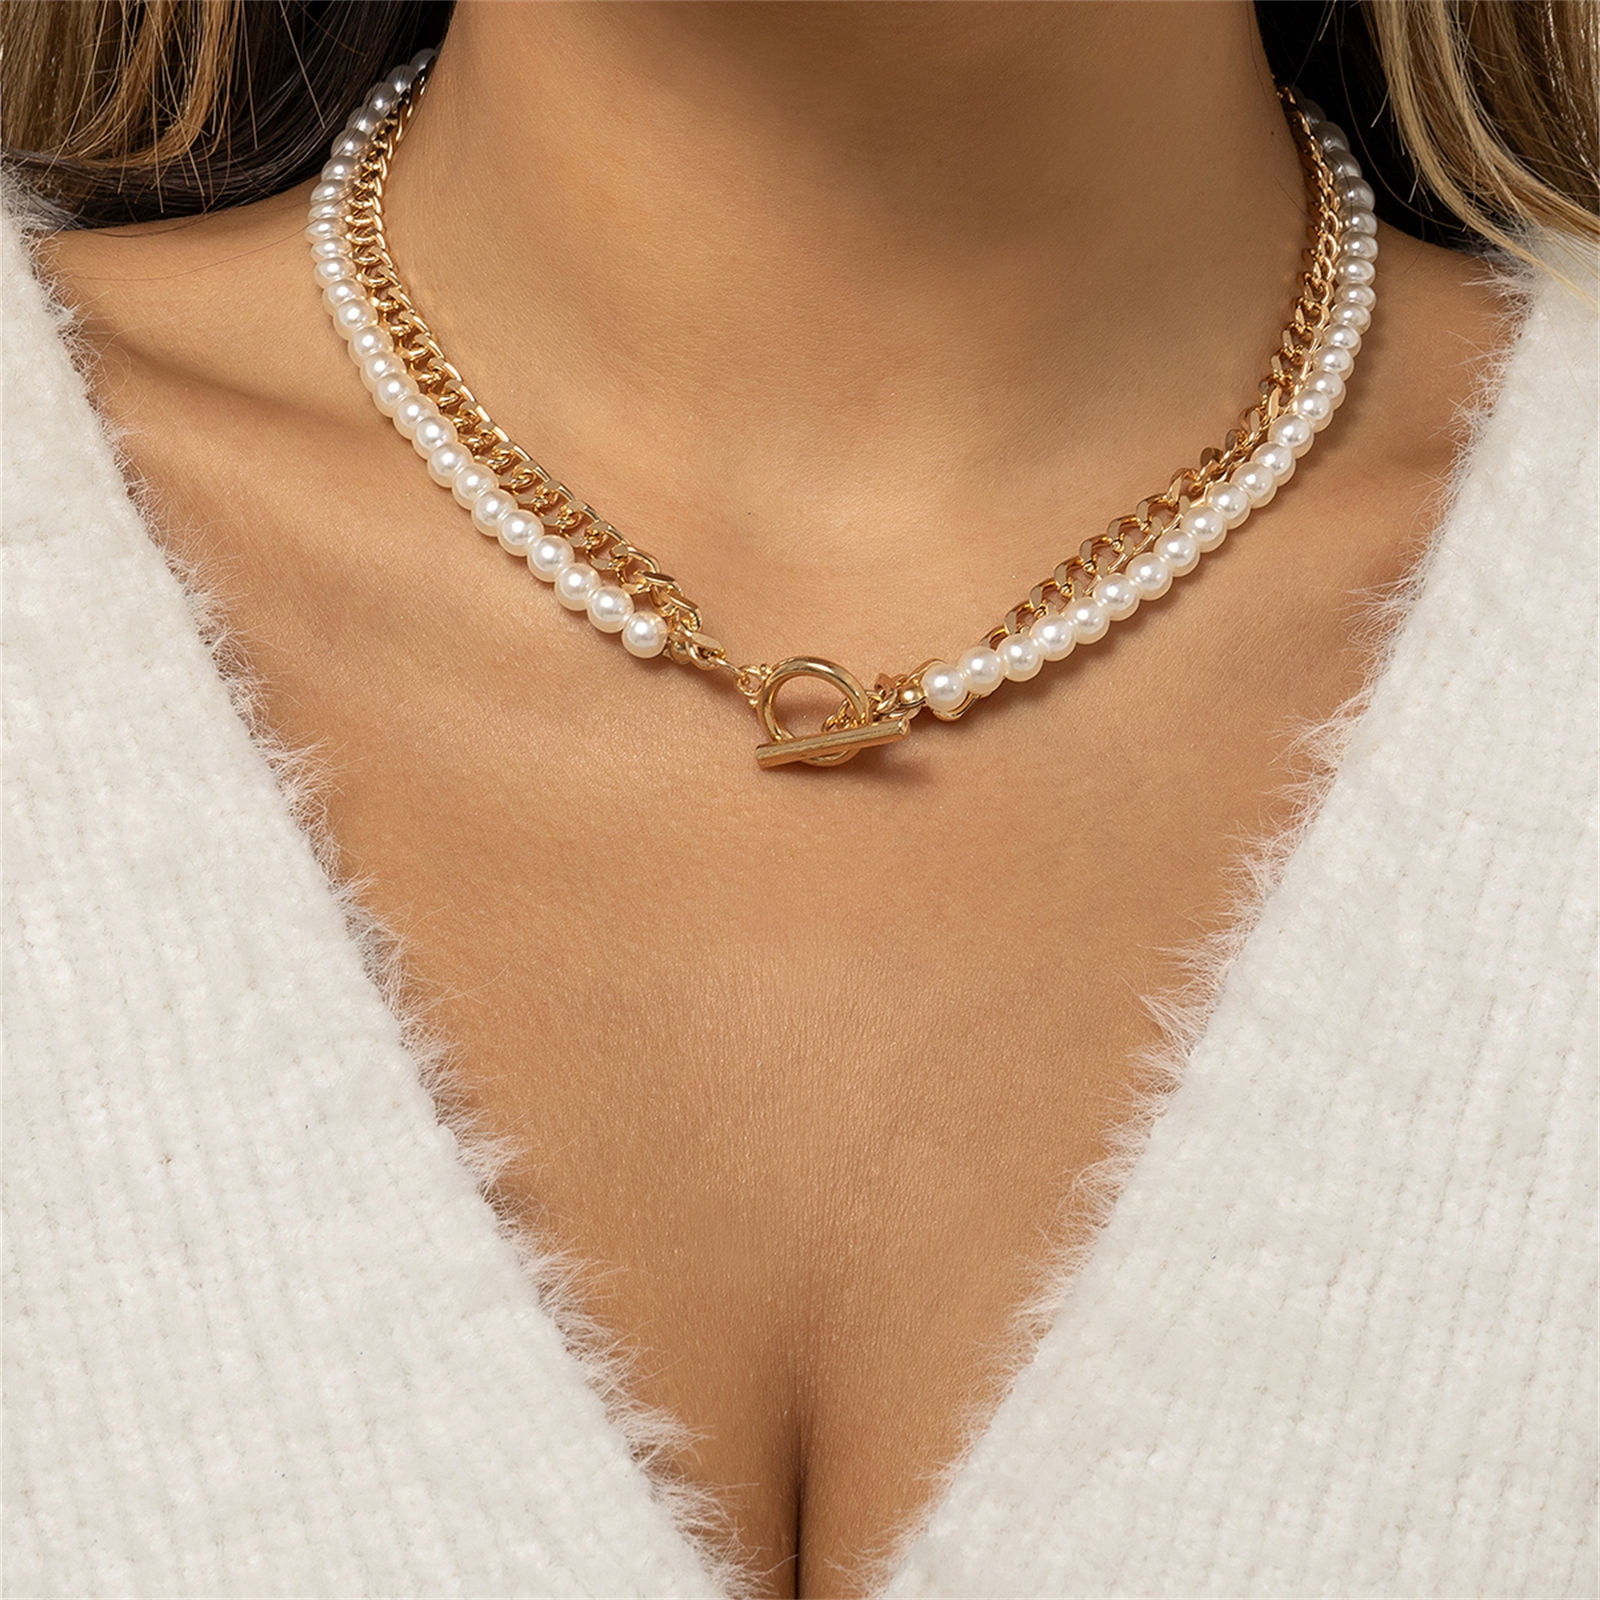 Chanel necklace vintage 1980s - Gem